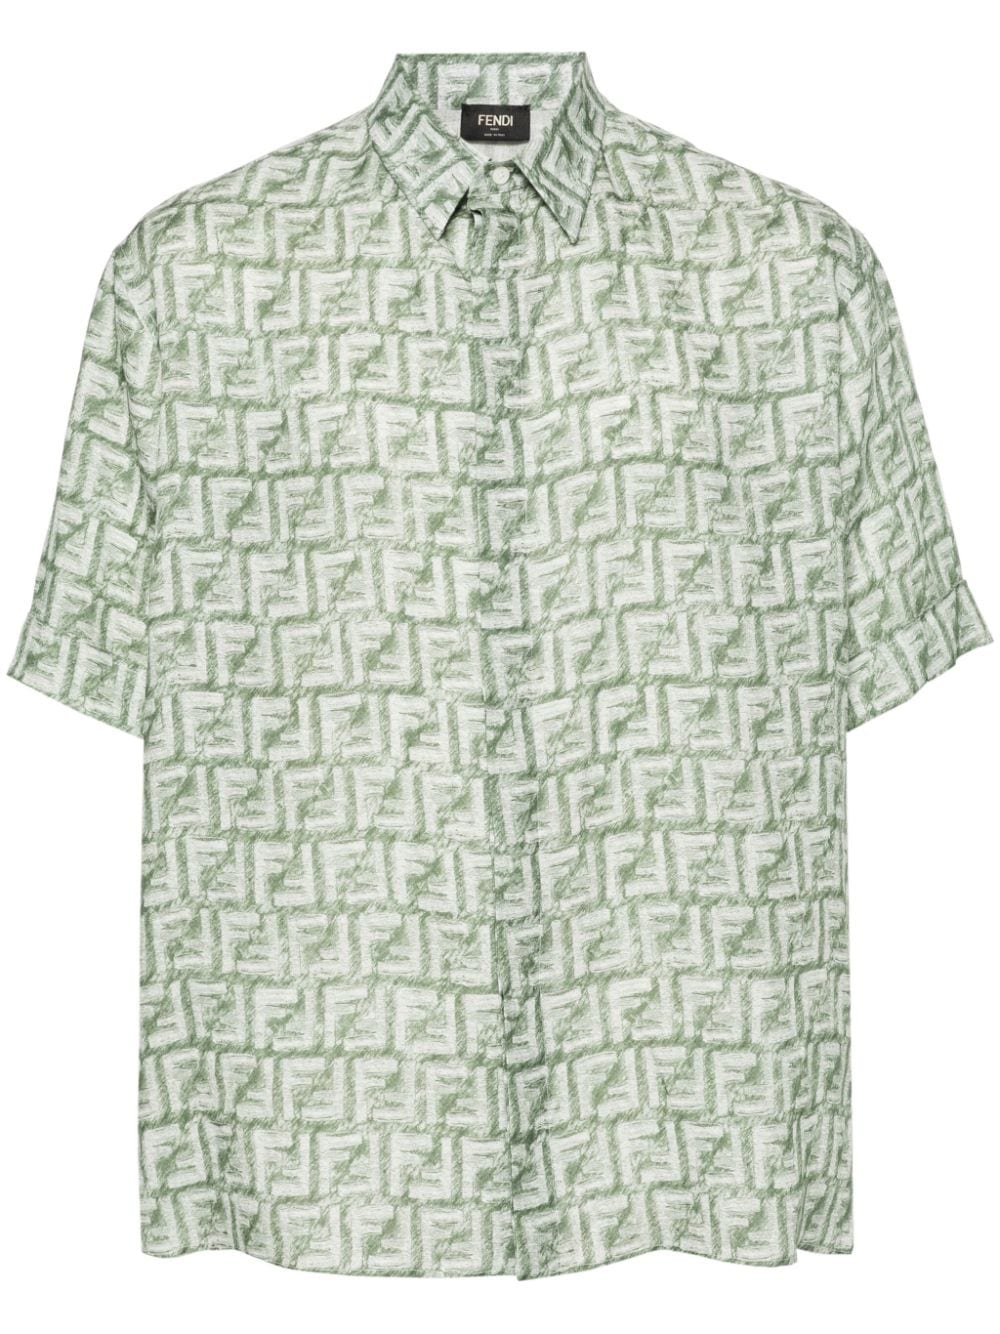 FF-motif linen shirt<BR/><BR/><BR/>